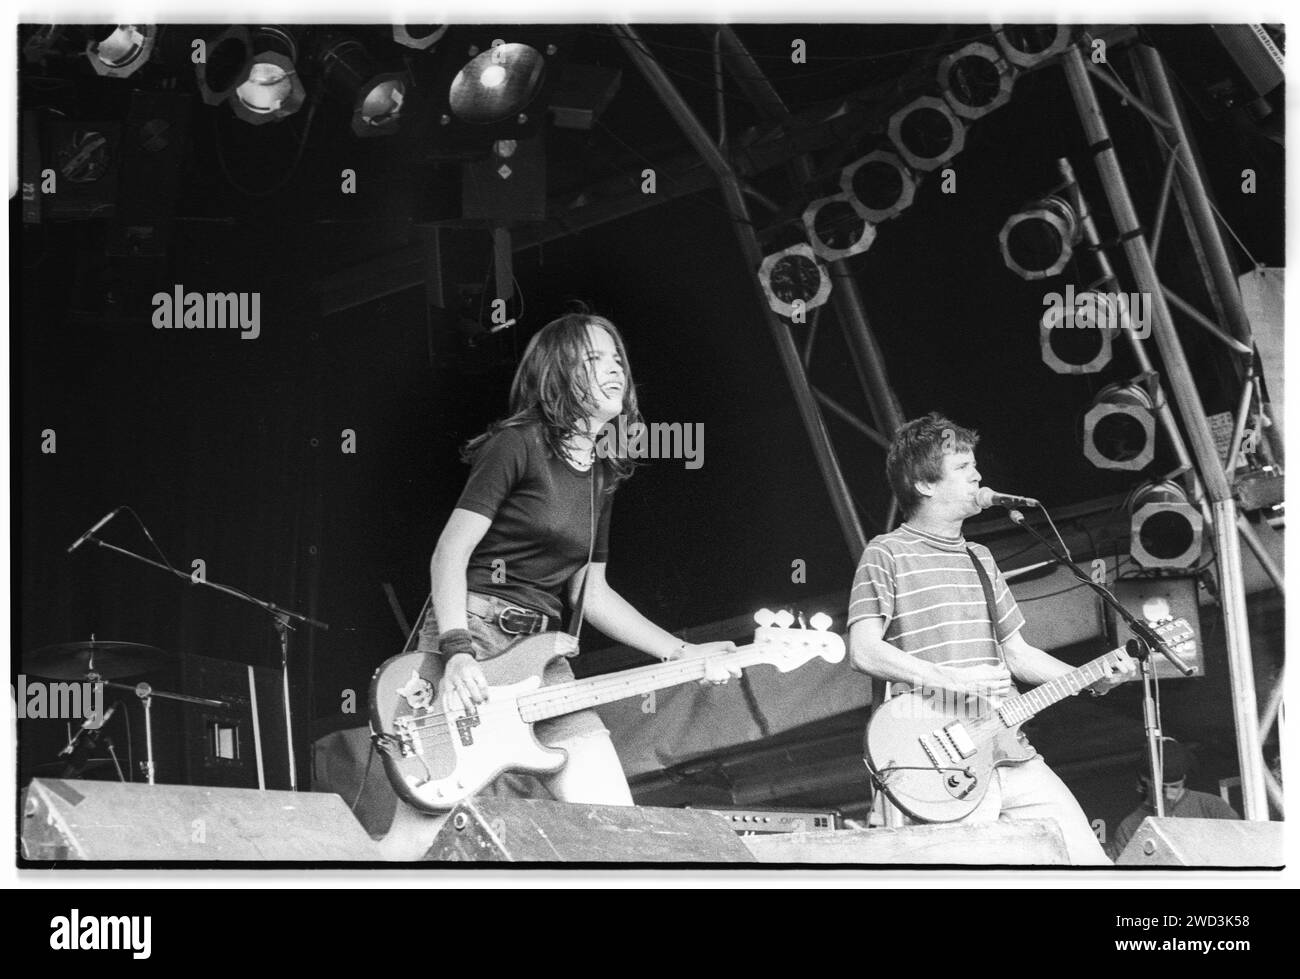 Laura Ballance e Mac McCaughan delle leggende indie americane Superchunk on the Pyramid Stage al Glastonbury Festival, Pilton, Inghilterra, venerdì 25 1993 giugno. Fotografia: ROB WATKINS. BAND INFO: I Superchunk, formatisi nel 1989, sono un gruppo indie rock di Chapel Hill, Carolina del Nord. Nota per il loro suono energico e melodico punk, la band, guidata da Mac McCaughan, è stata una forza consistente e influente nel panorama della musica alternativa. Foto Stock